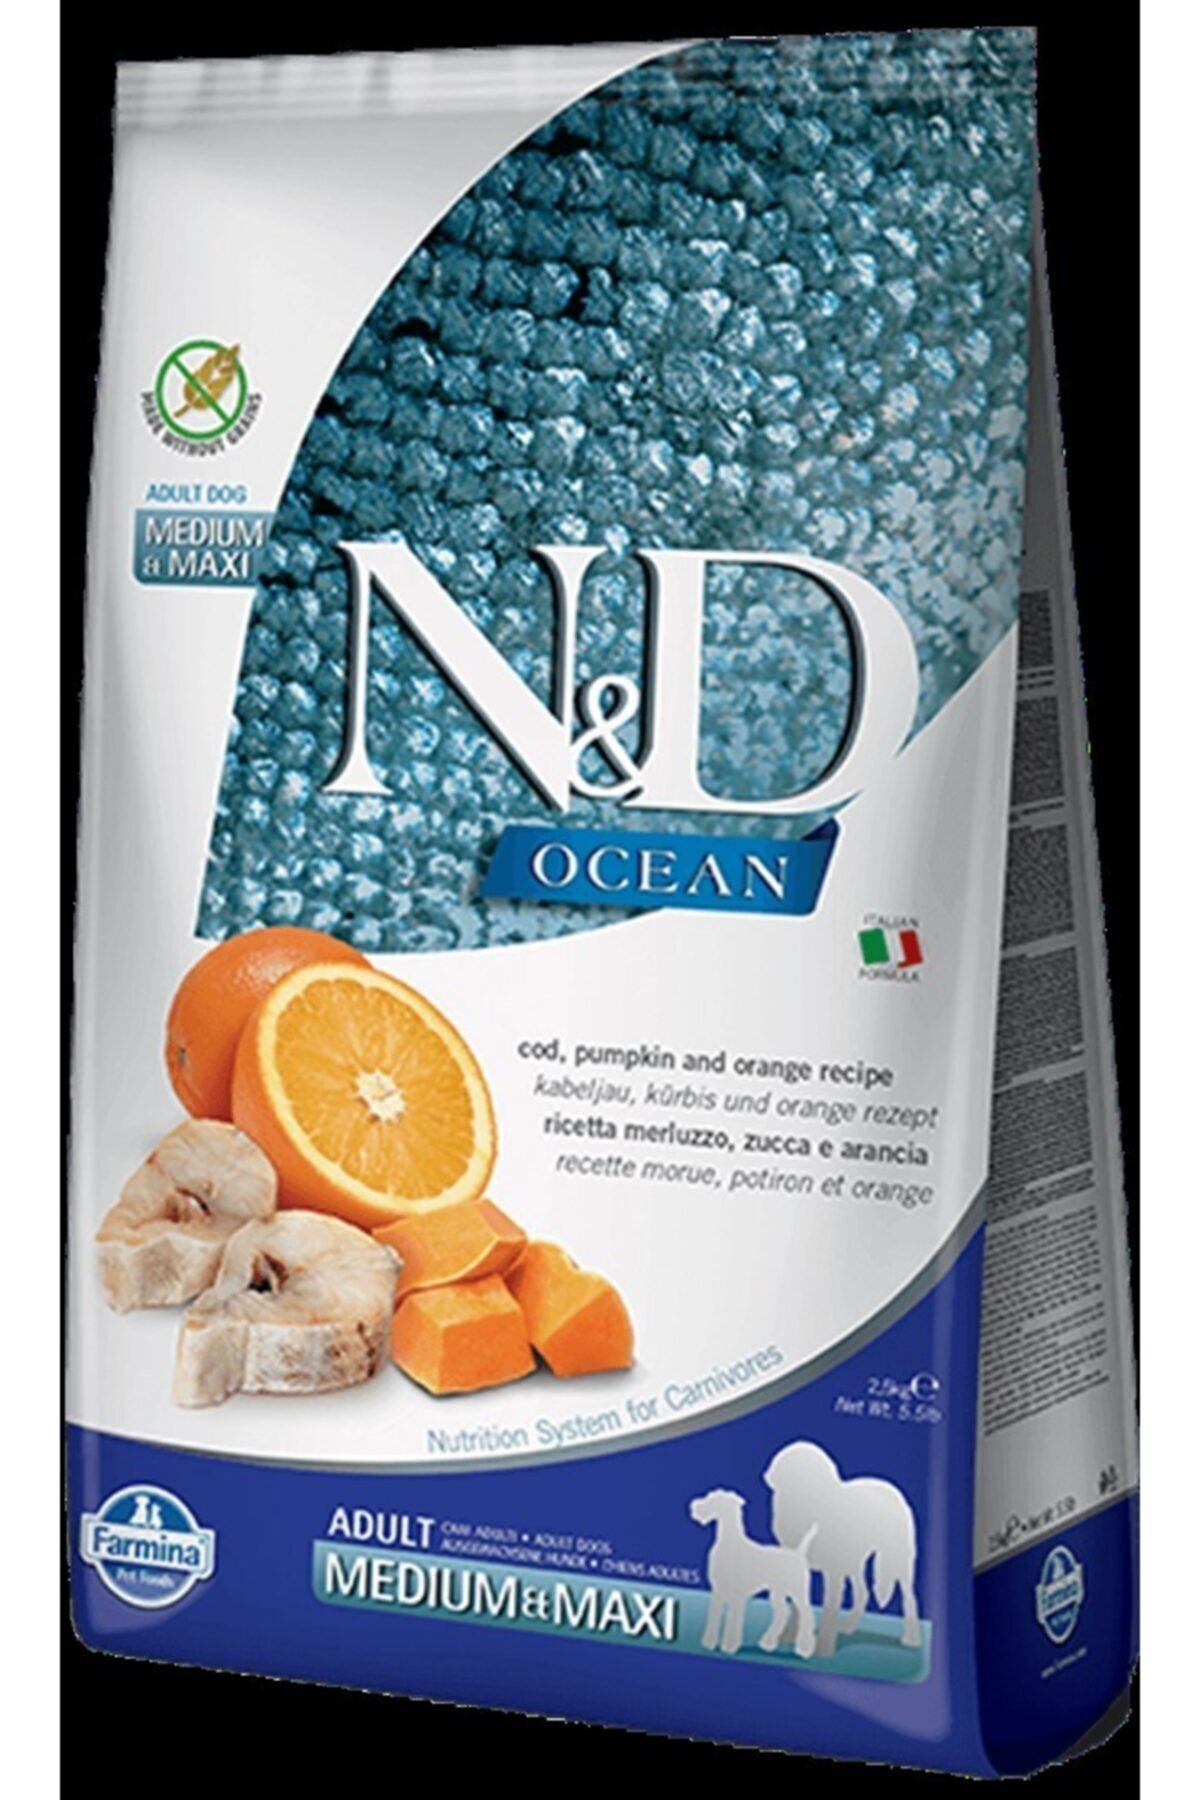 N & D Ocean Tahılsız Ringa Balık Portakallı Medium Maxı Yetişkin Köpek Maması 12 Kg 8010276020291